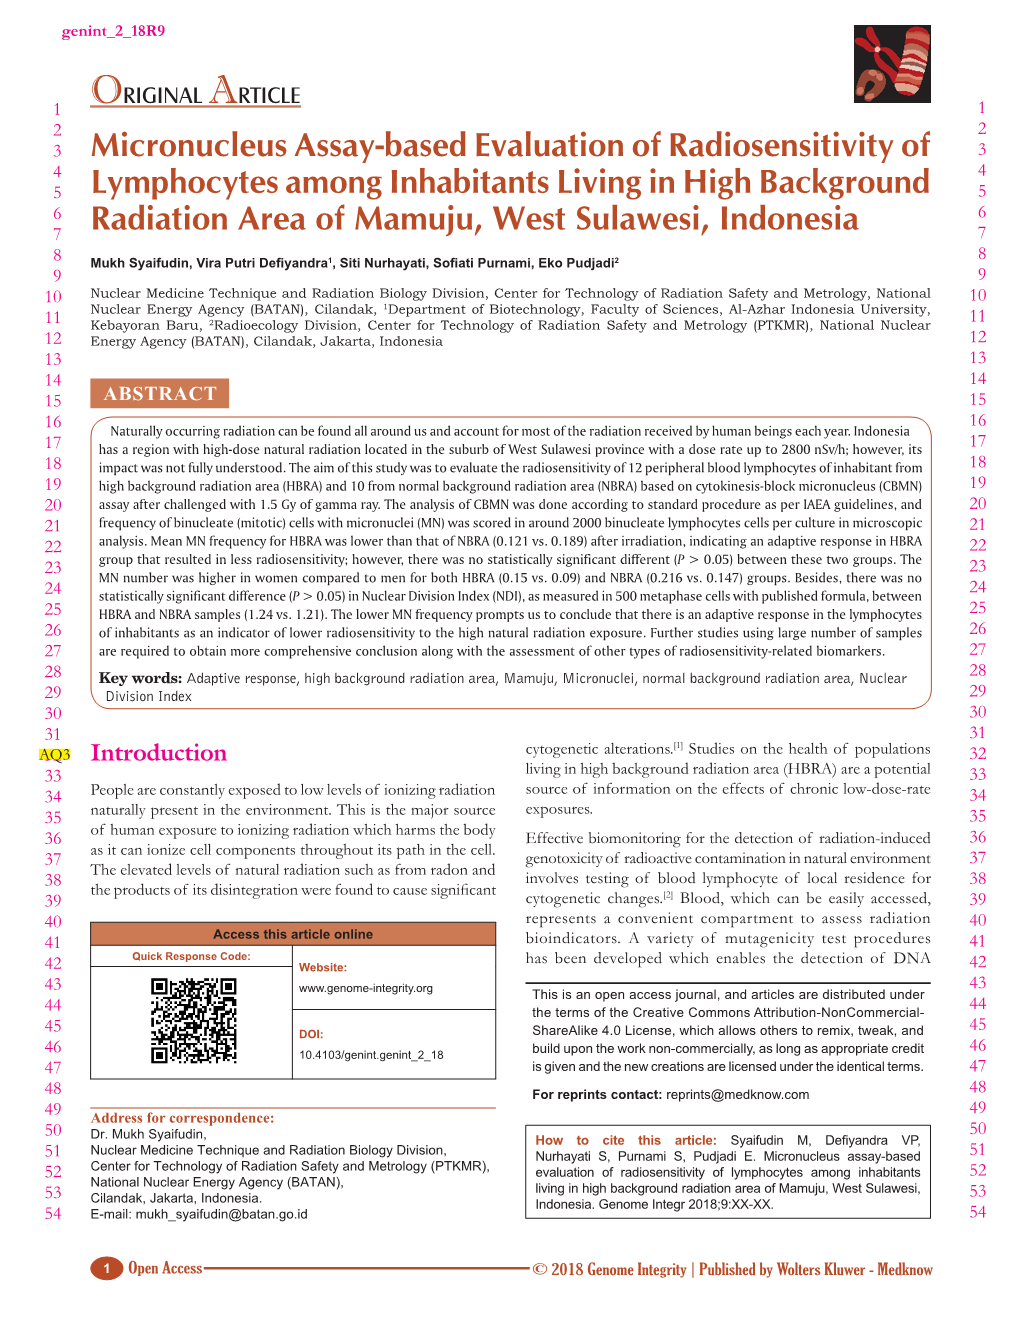 Micronucleus Assay‑Based Evaluation of Radiosensitivity of Lymphocytes